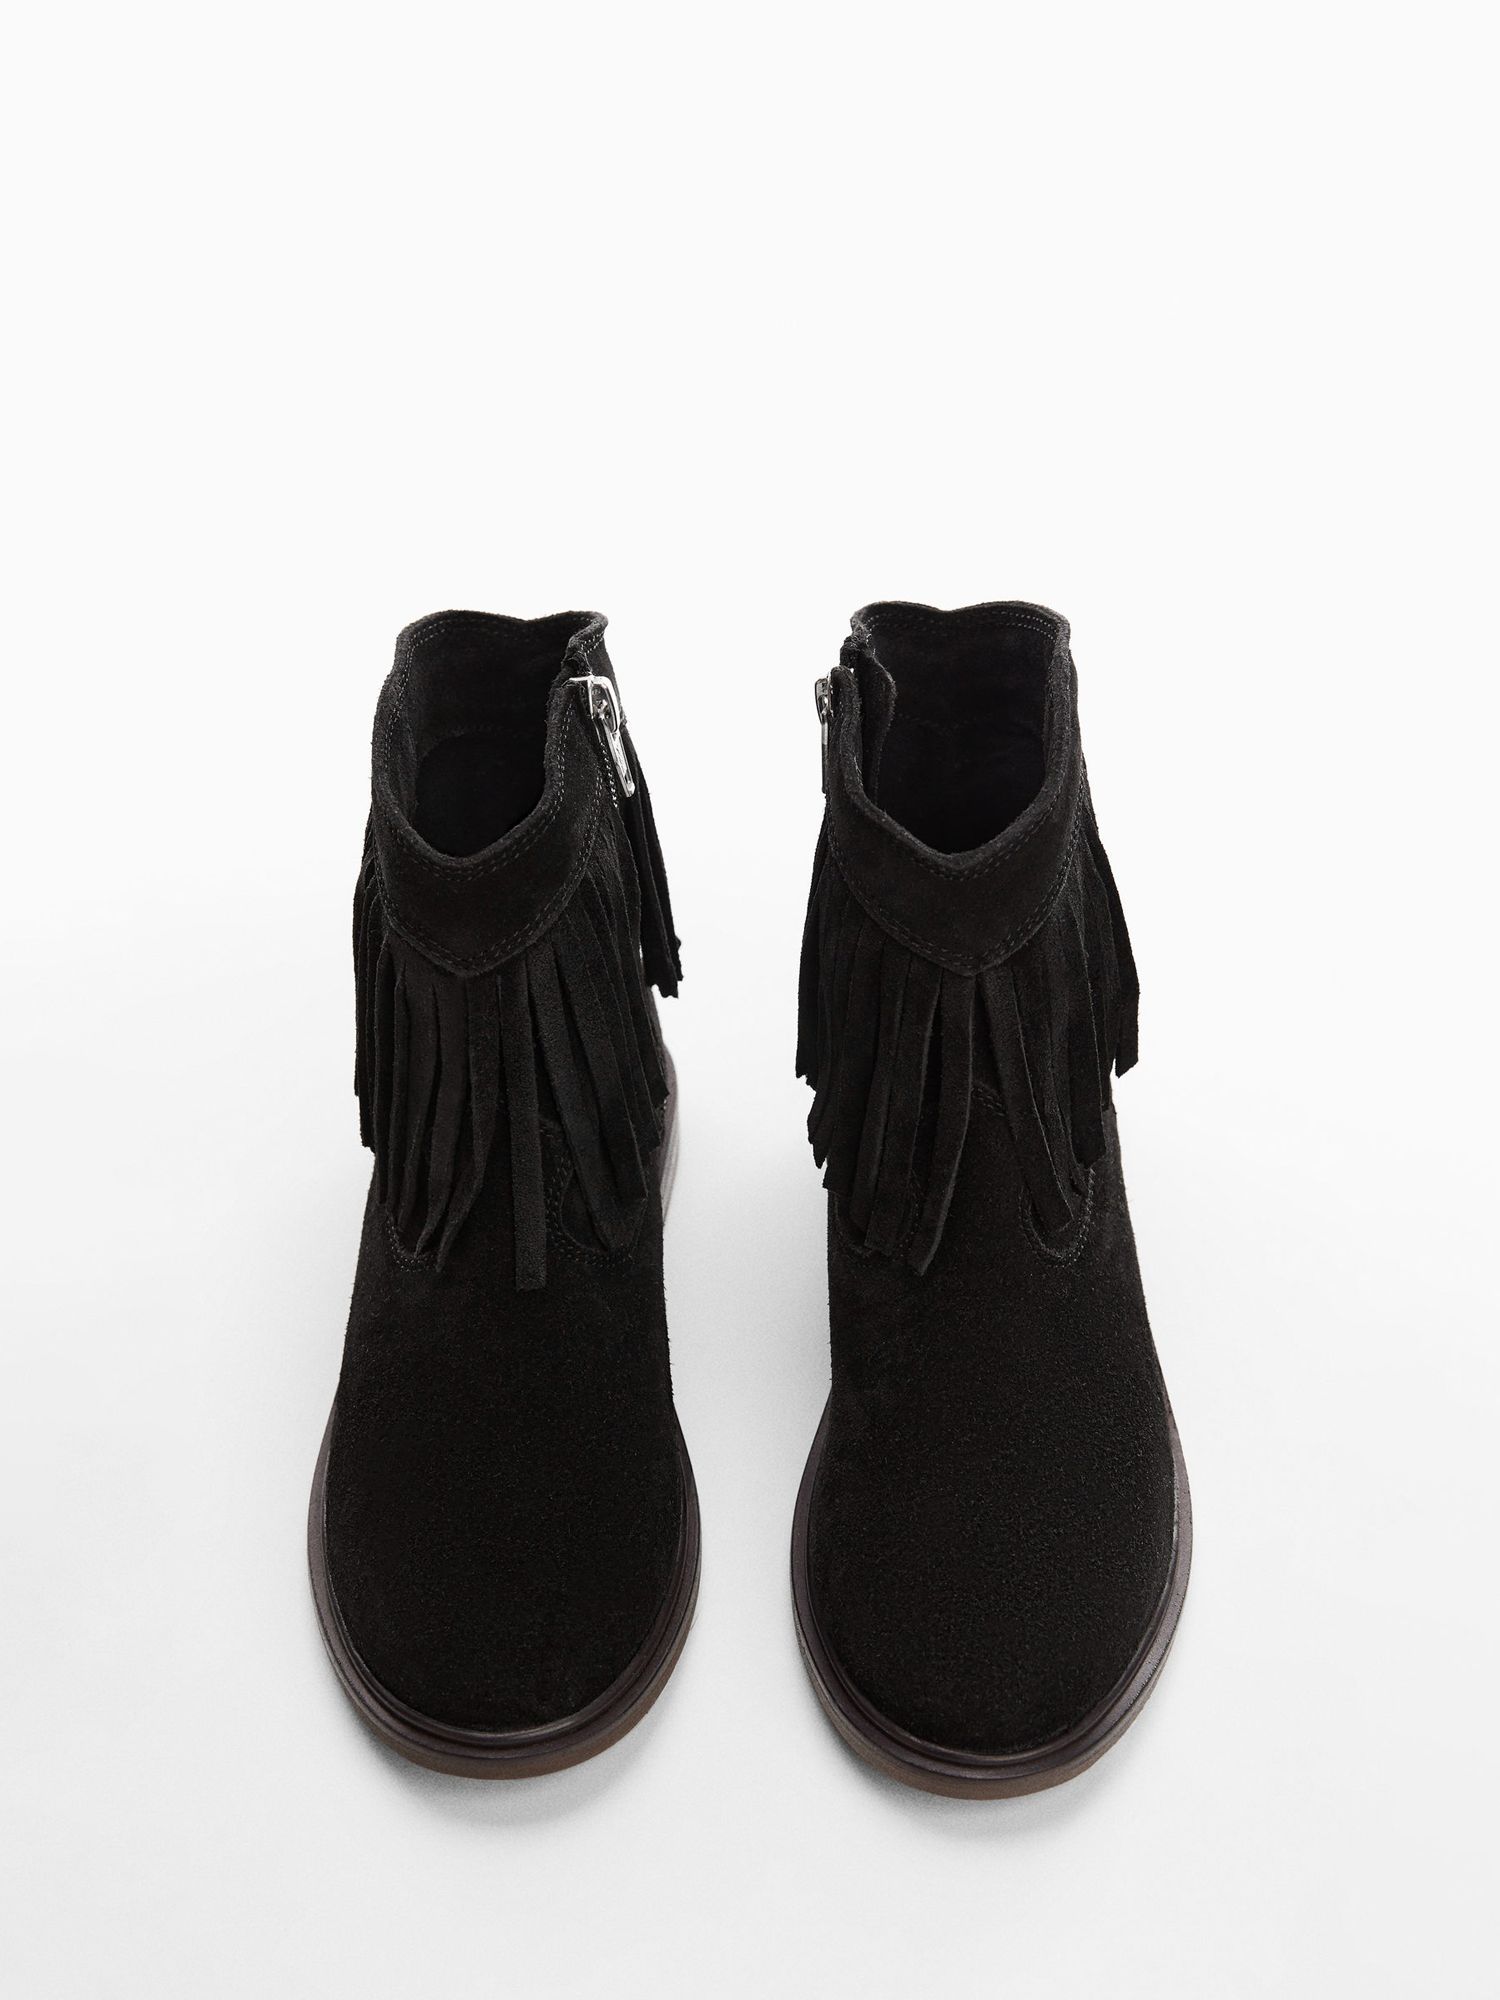 Mango Kids' Dakota Fringed Leather Boots, Black, 1